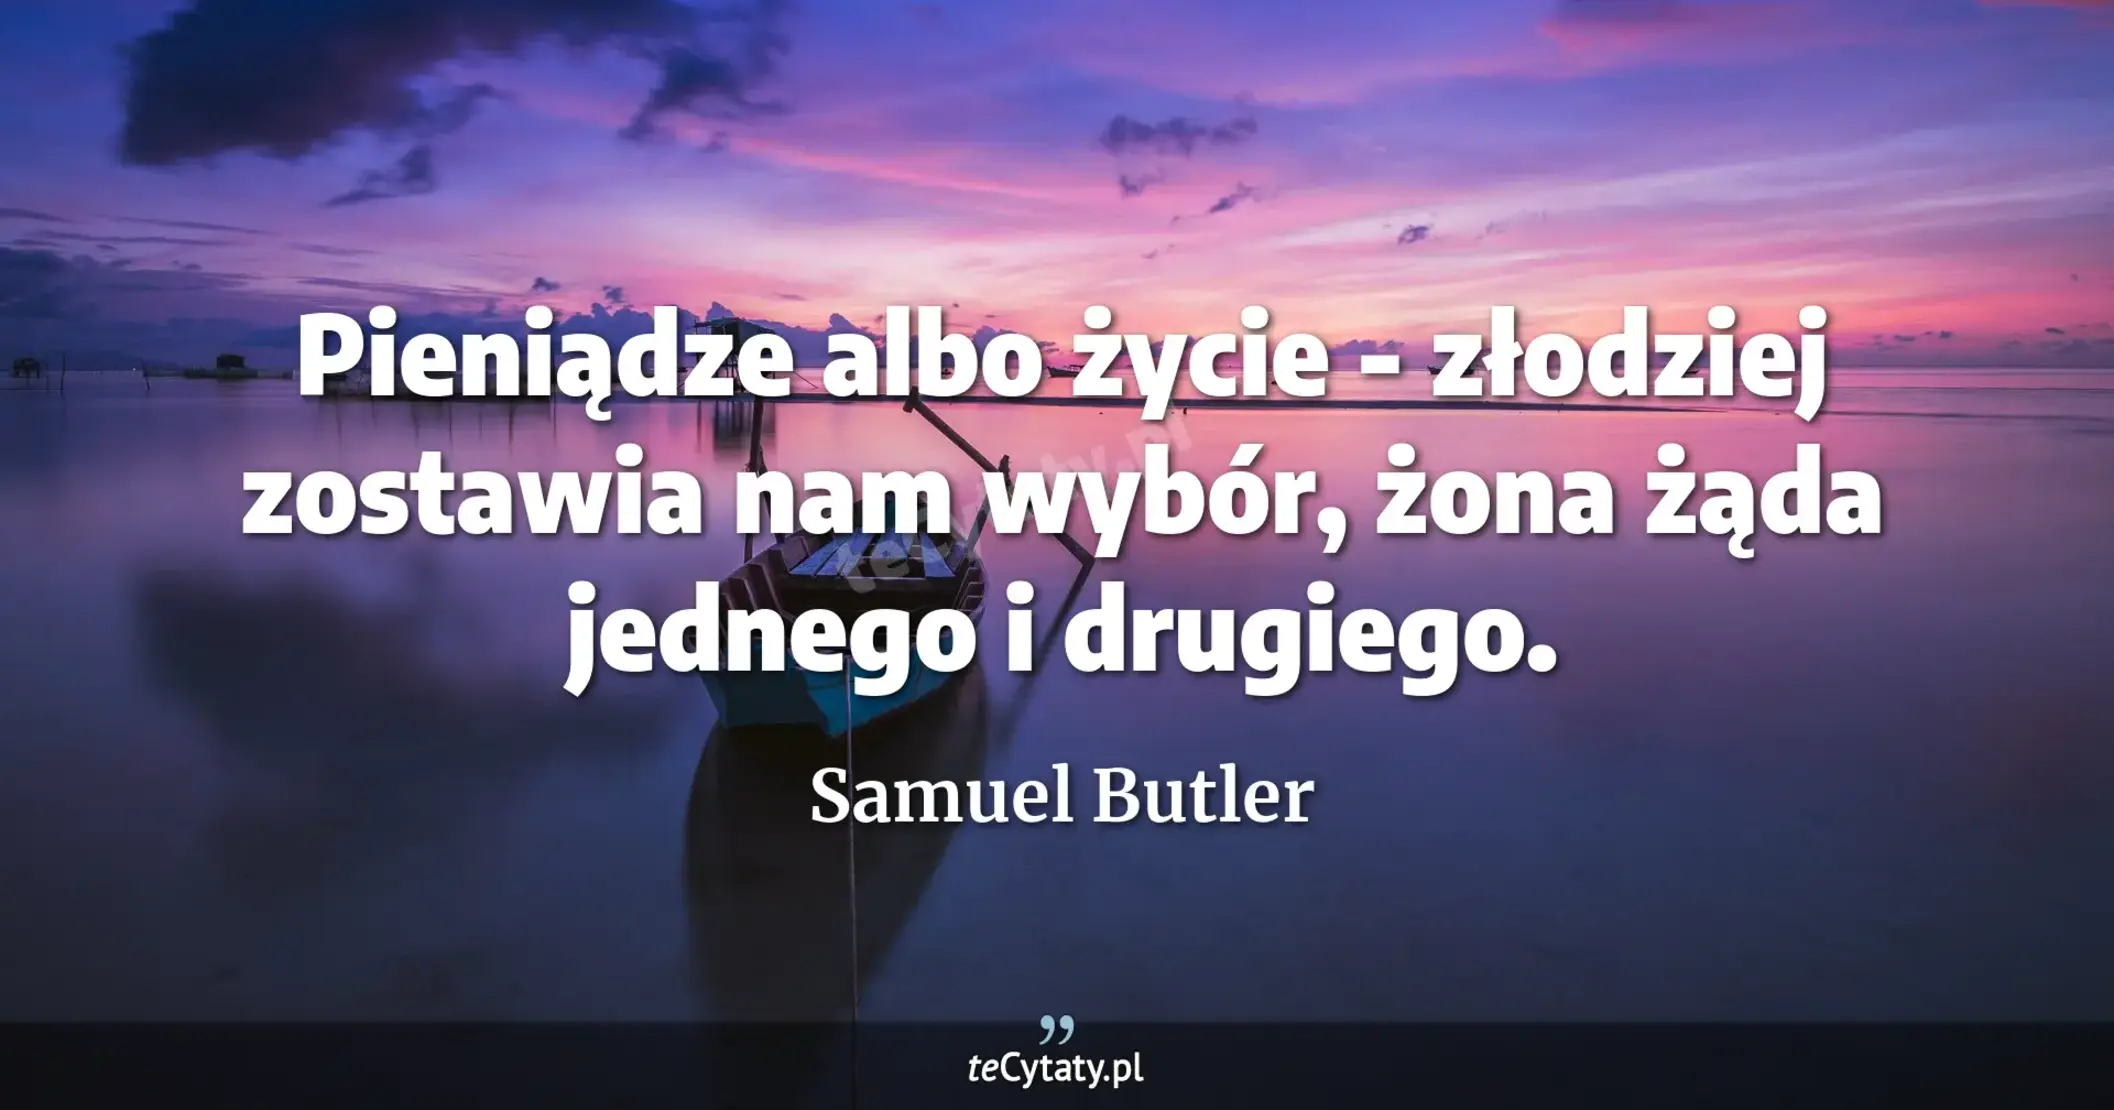 Pieniądze albo życie - złodziej zostawia nam wybór, żona żąda jednego i drugiego. - Samuel Butler